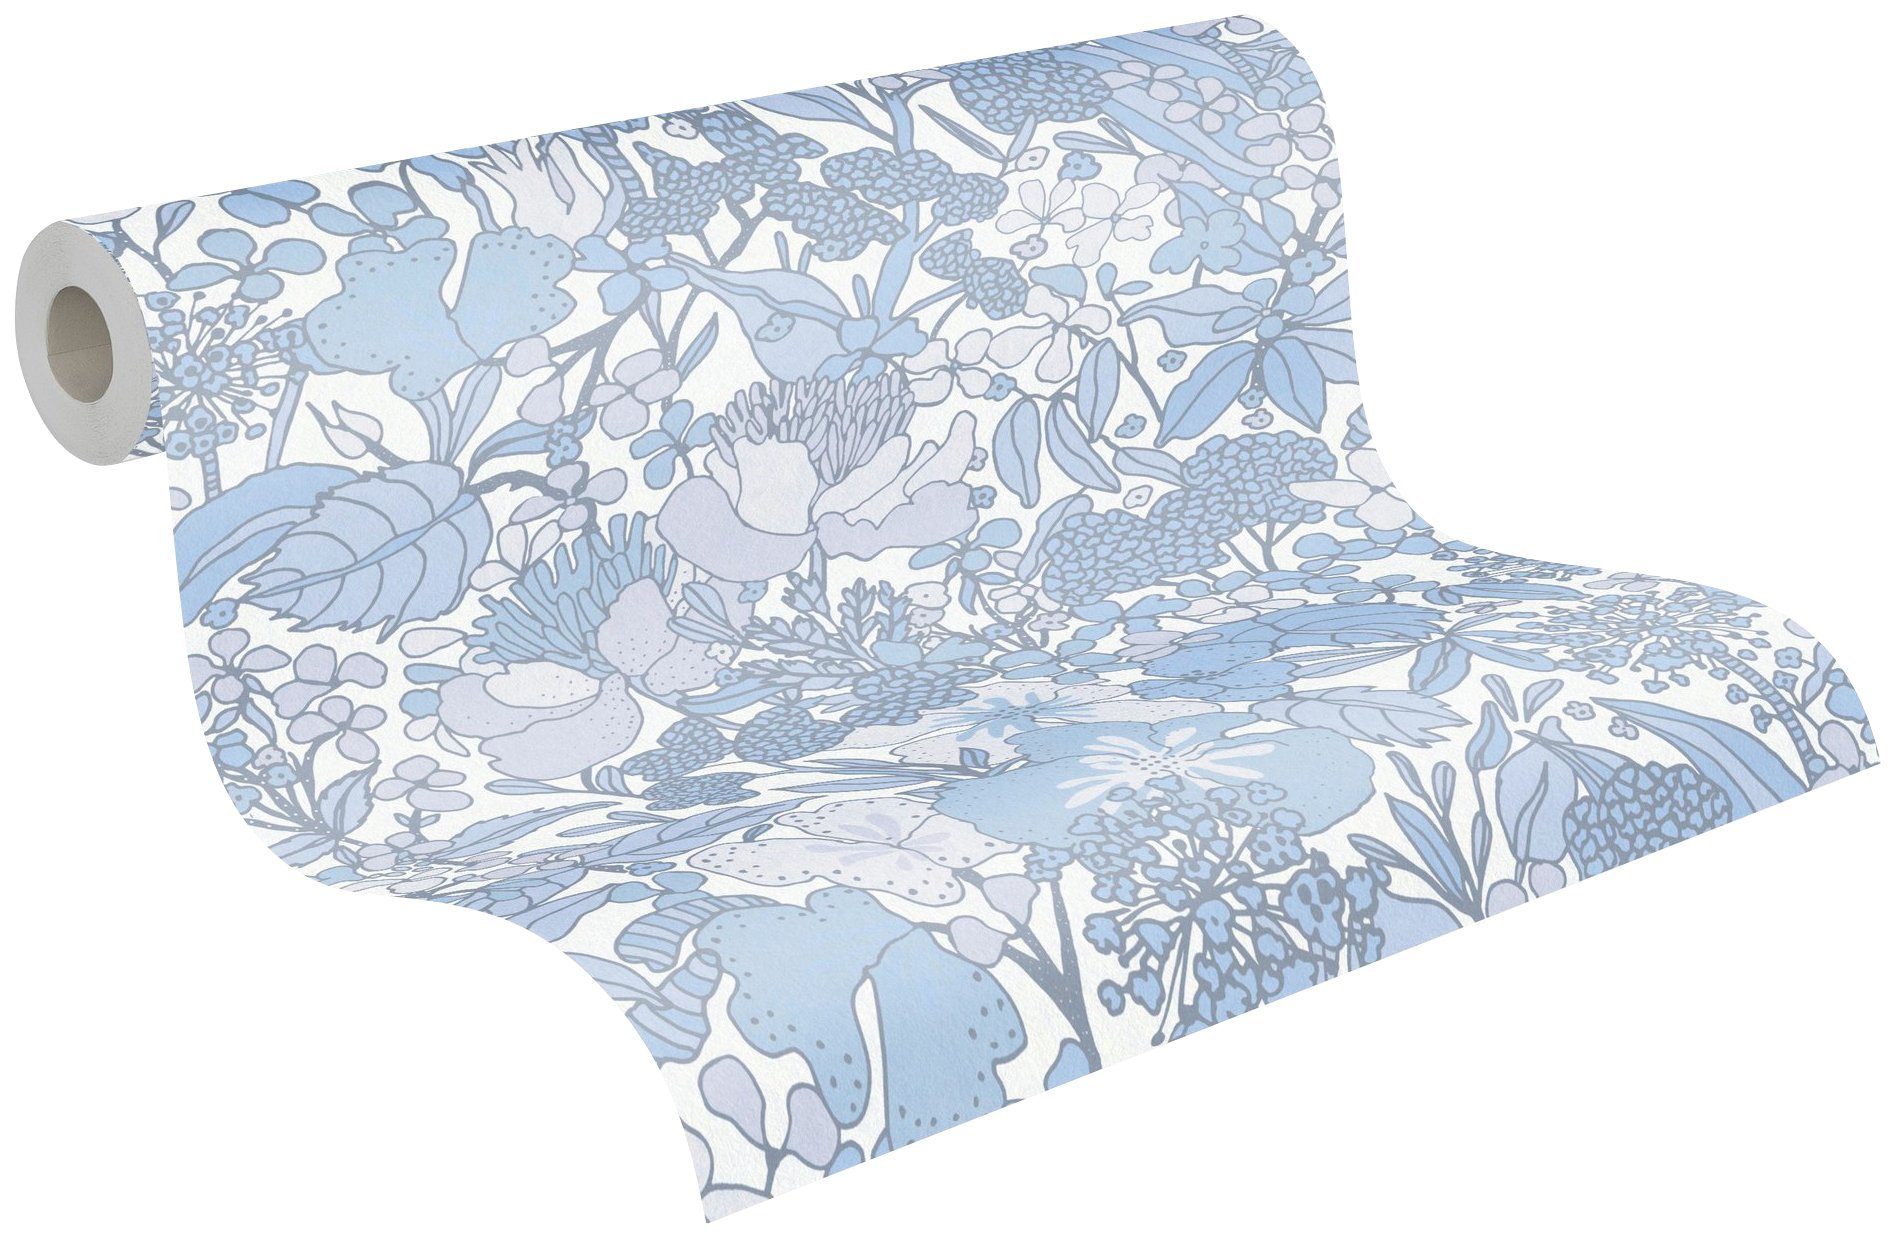 Architects Paper Vliestapete botanisch, grau/blau/weiß Dschungel Blumentapete glatt, Floral Tapete Impression, floral